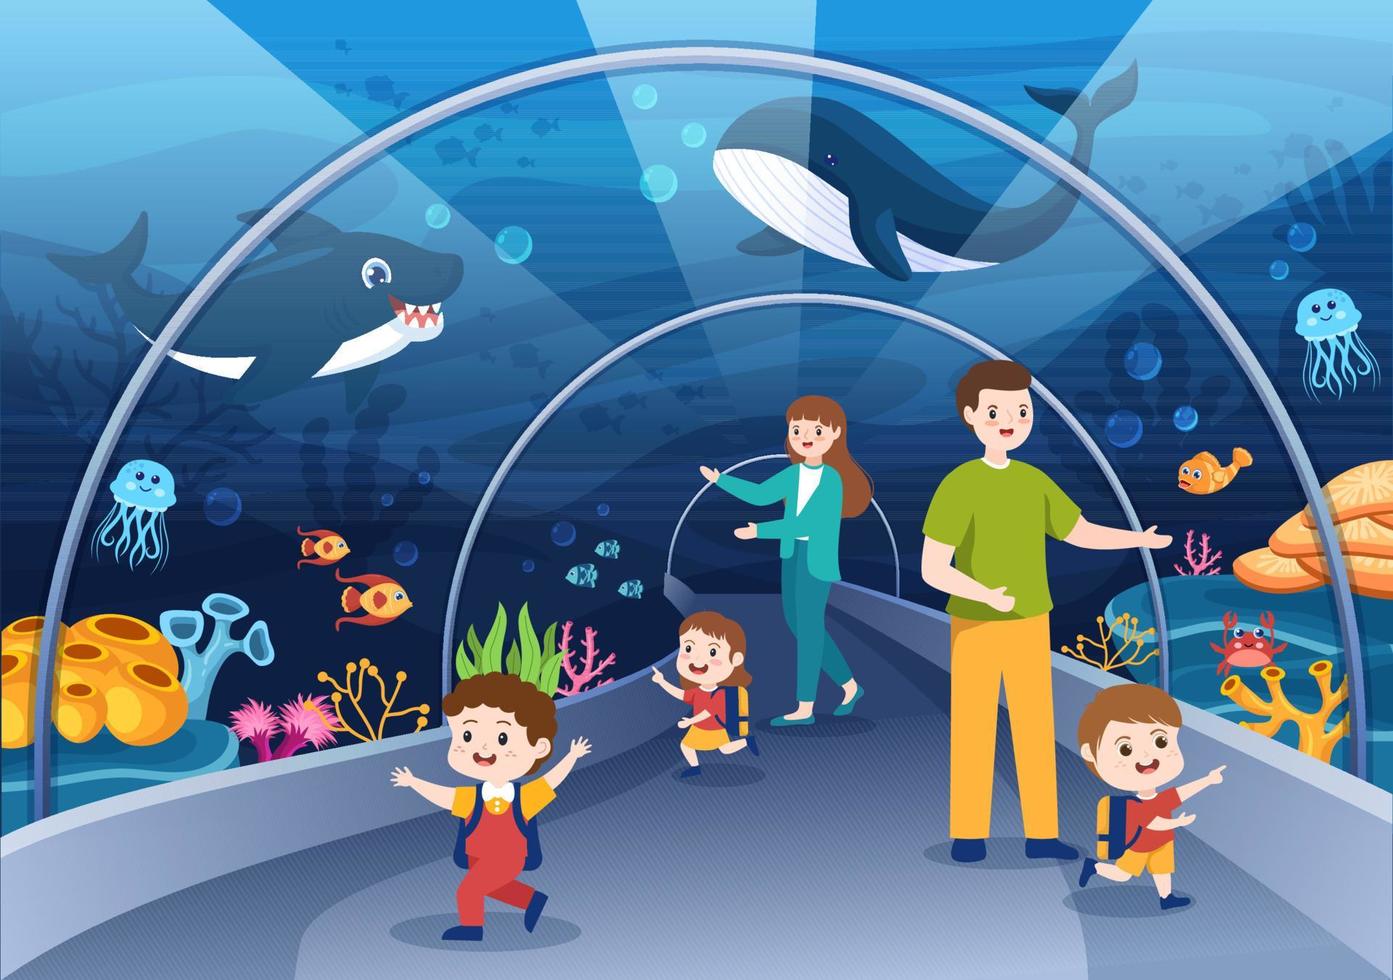 plantilla de acuario dibujada a mano ilustración plana de dibujos animados con familia y niños mirando peces submarinos, variedad de animales marinos, flora y fauna marina vector